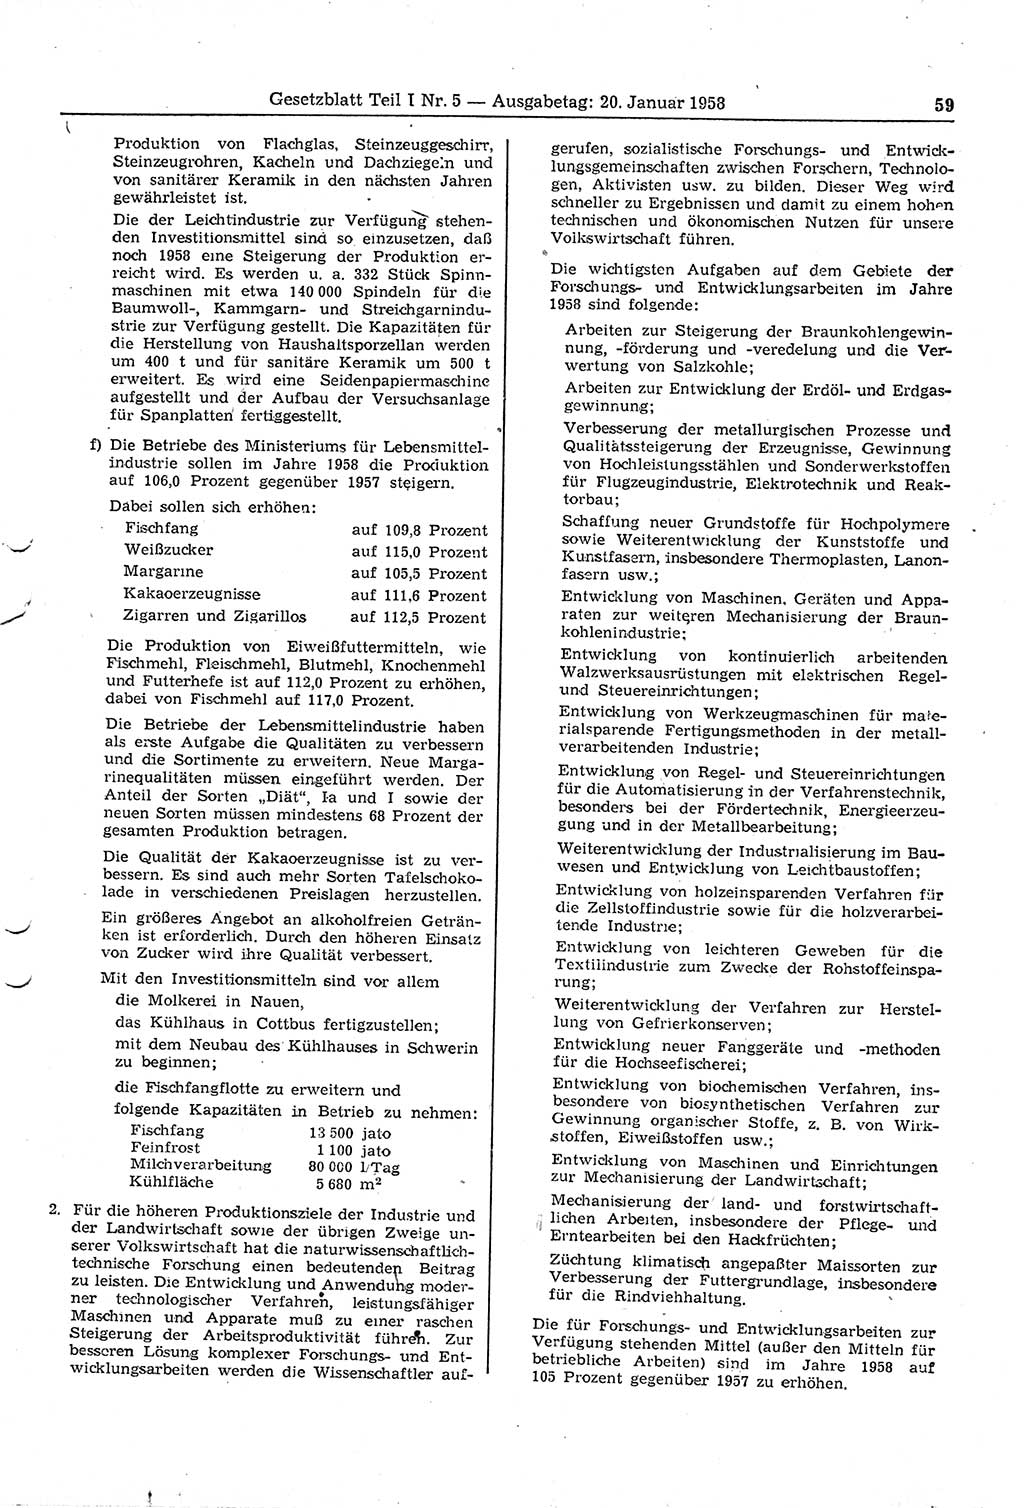 Gesetzblatt (GBl.) der Deutschen Demokratischen Republik (DDR) Teil Ⅰ 1958, Seite 59 (GBl. DDR Ⅰ 1958, S. 59)